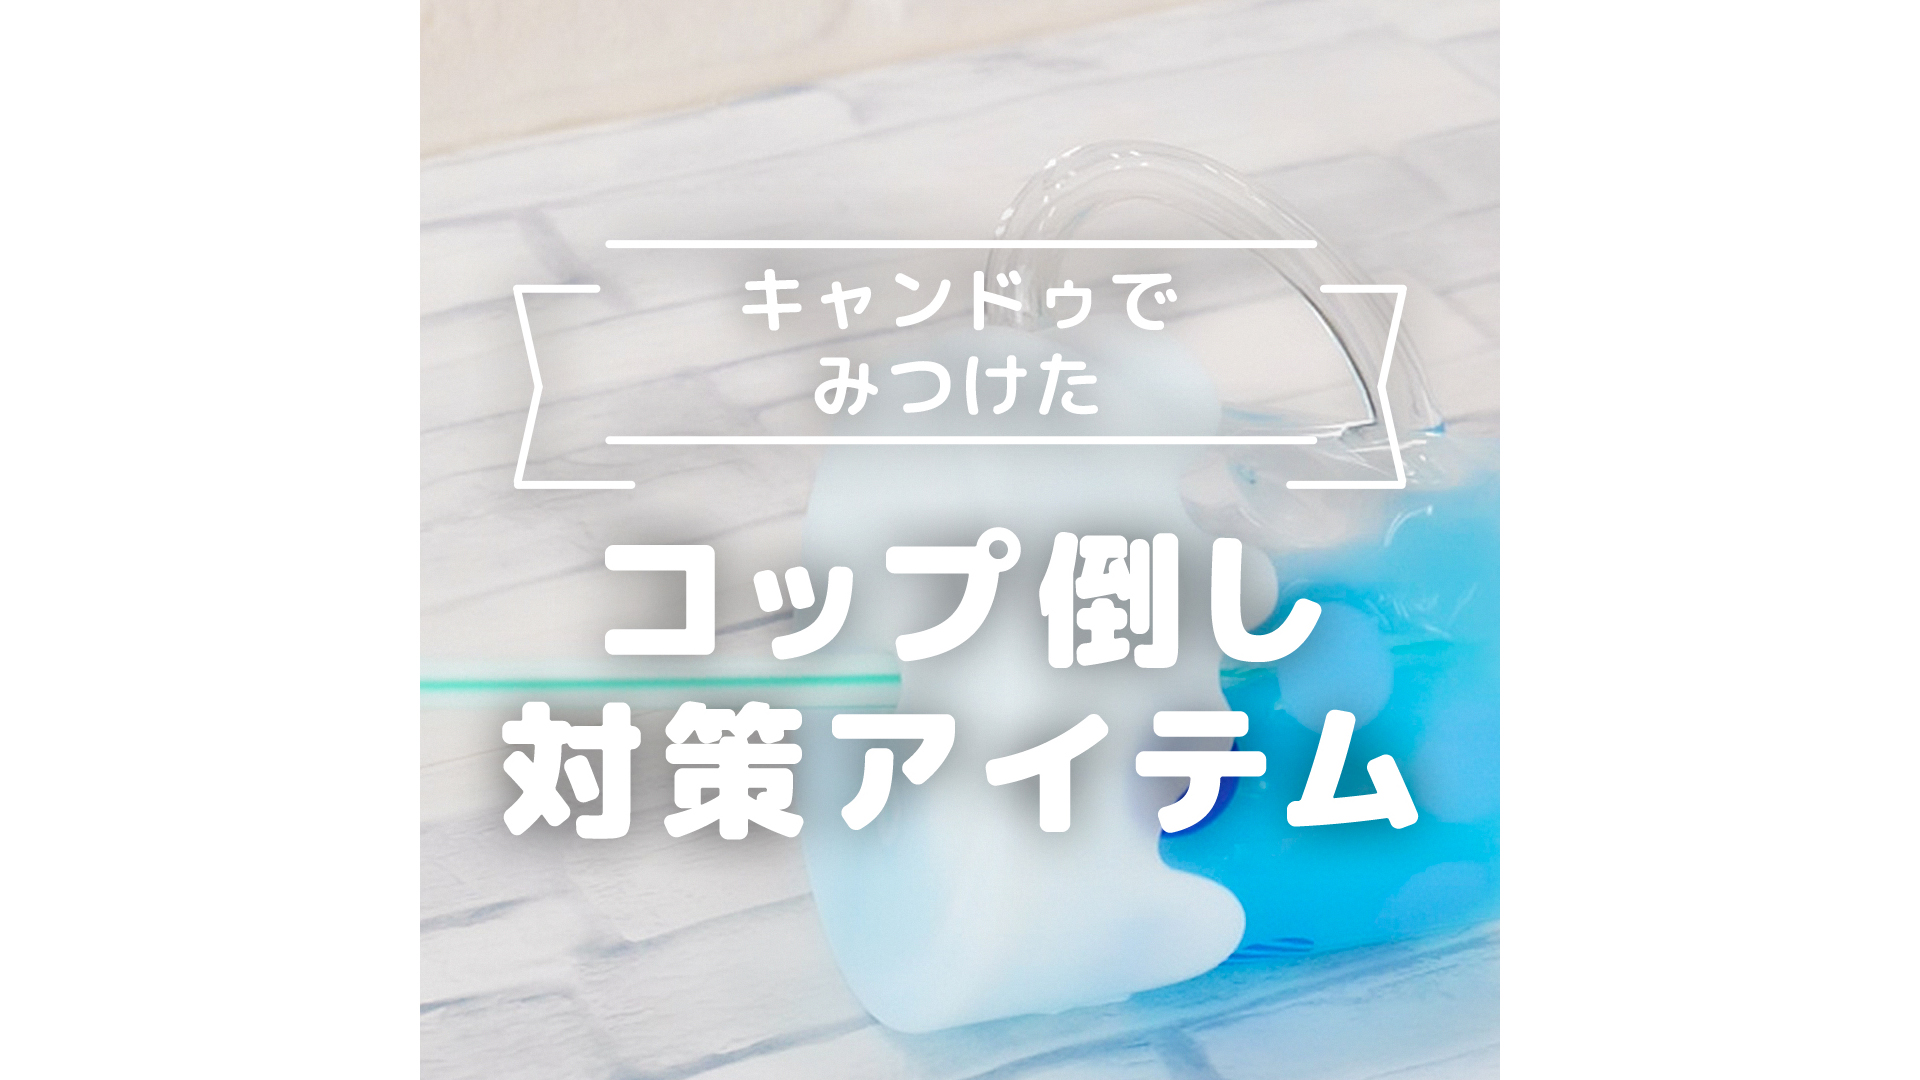 キャンドゥでみつけた コップ倒し対策アイテム -  トモニテ - 旧 MAMADAYS | Yahoo! JAPAN